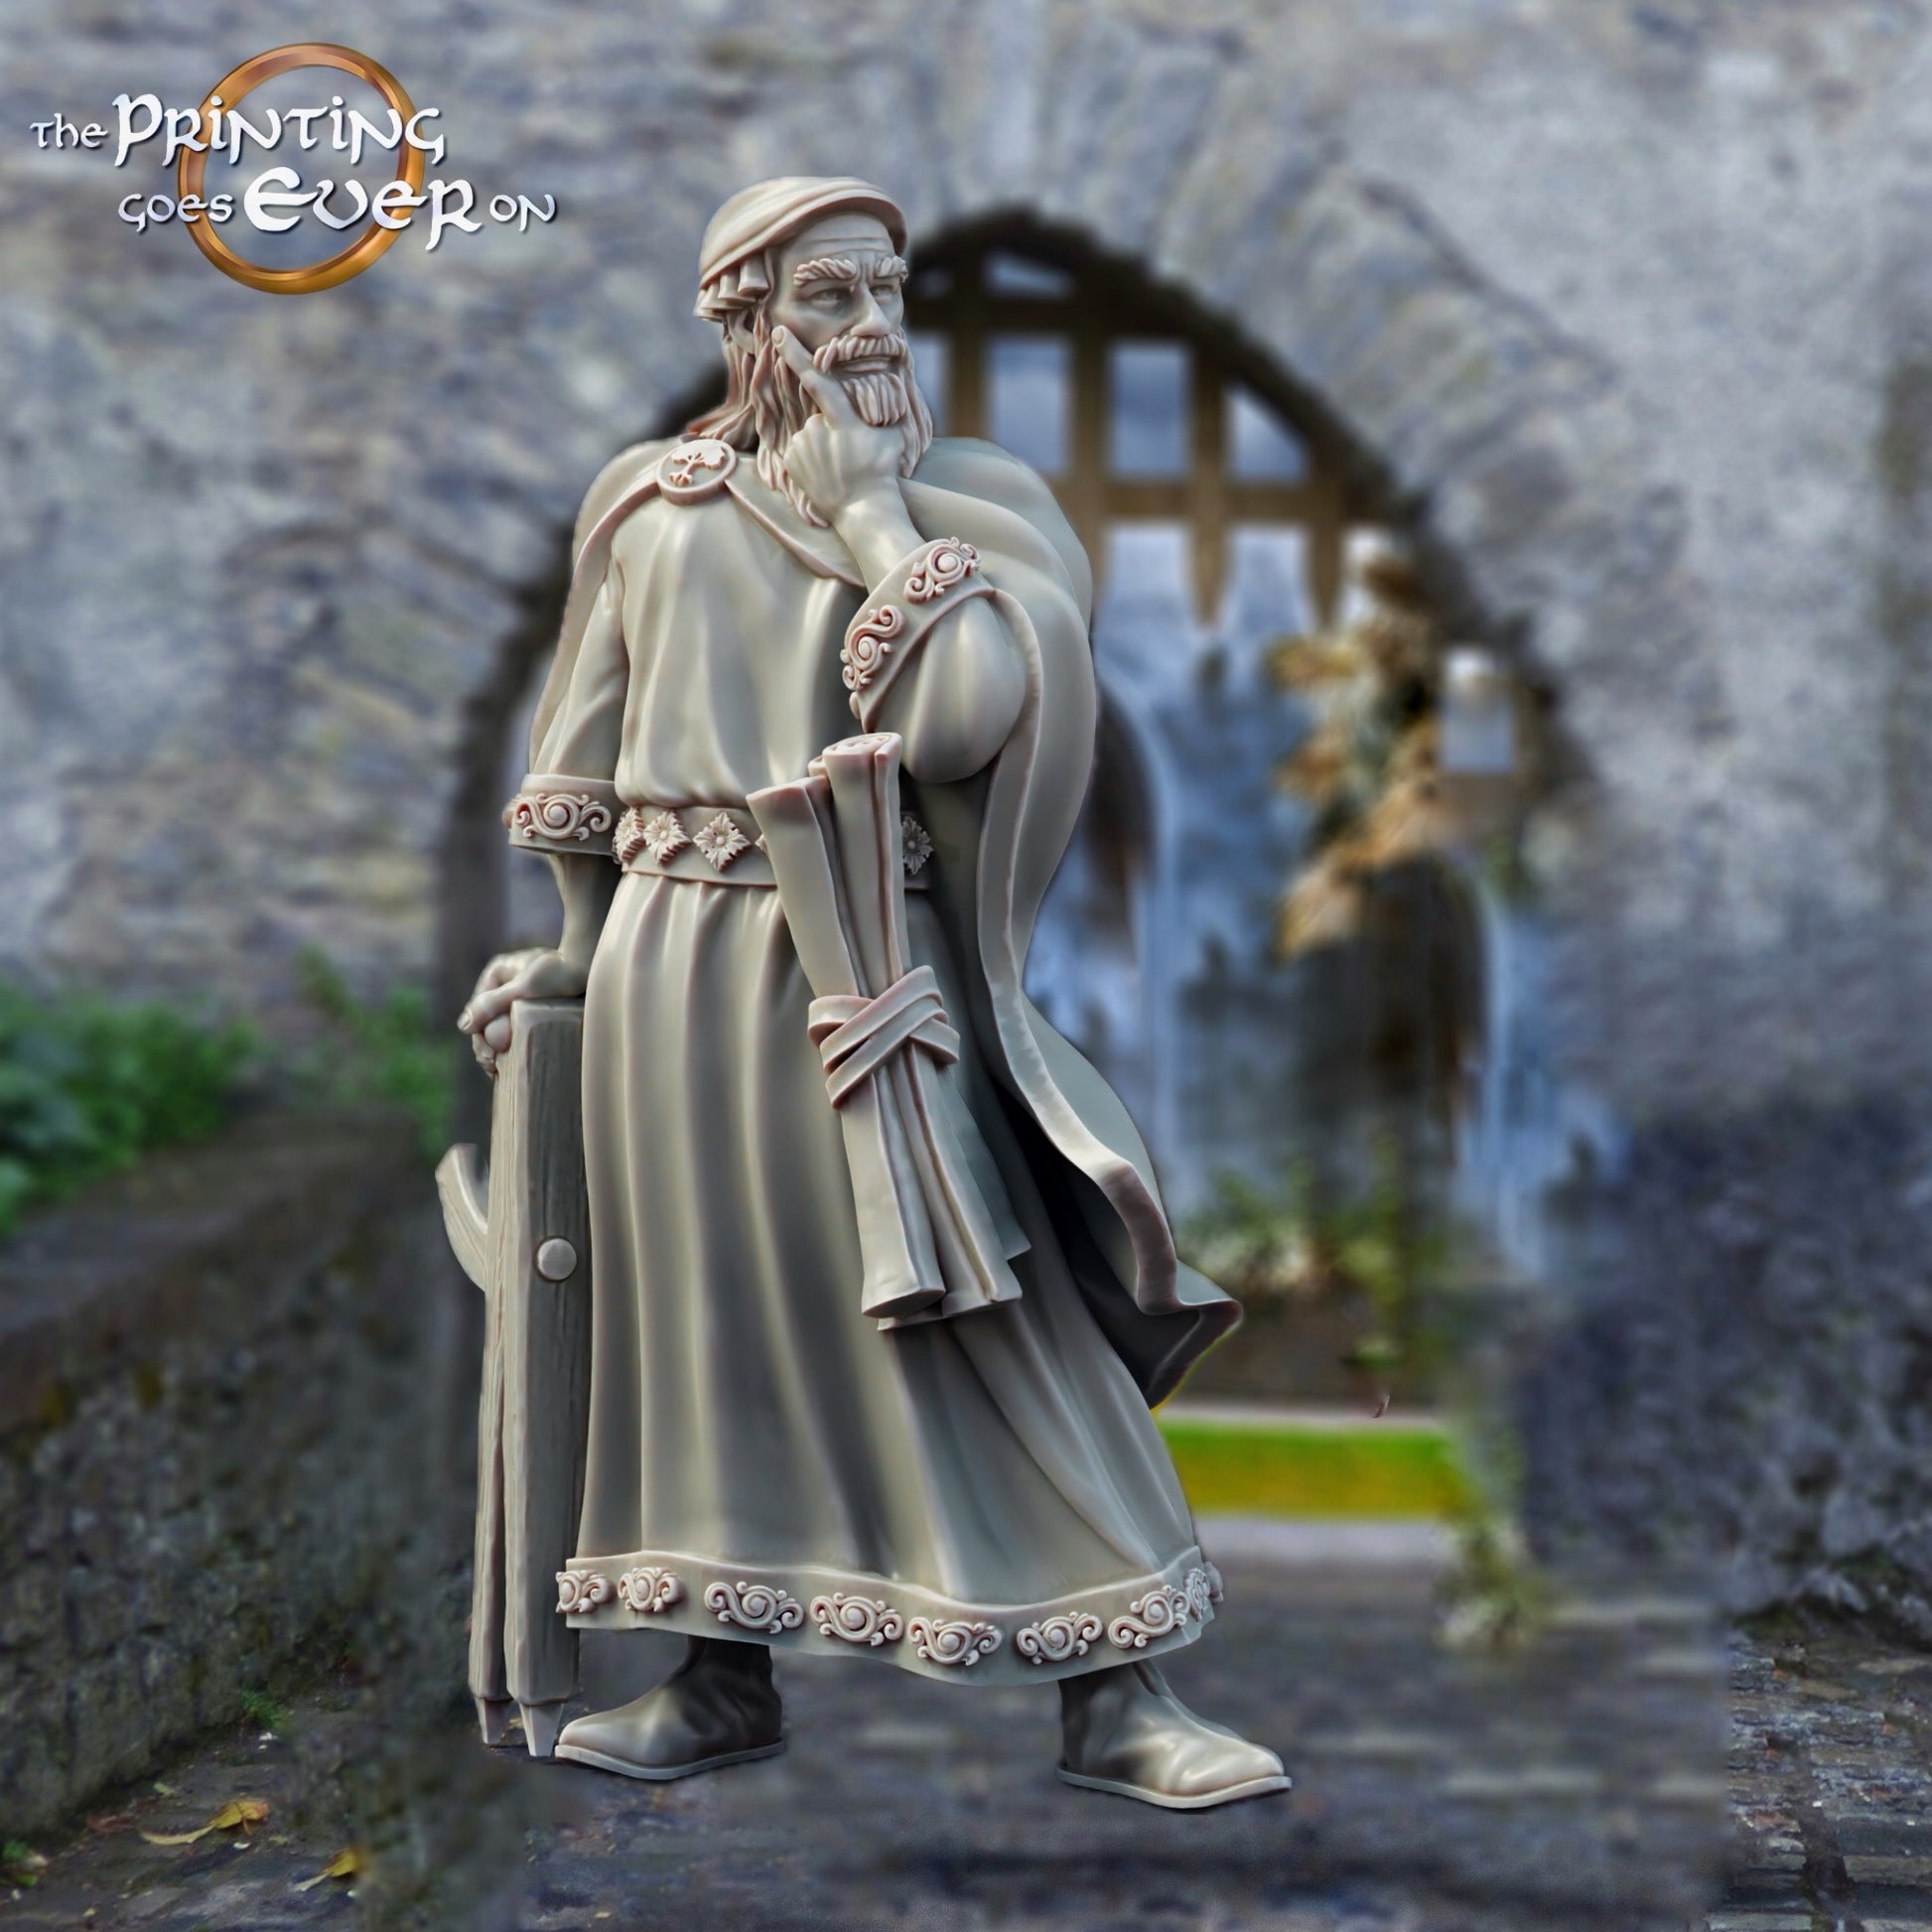 Produktfoto mittelalterliche historische Figur 75mm Scale The Printing Goes Ever On (TPGEO)  0: Mittelalterliche Ritter Figuren Architekt Mittelalterliche Stadt